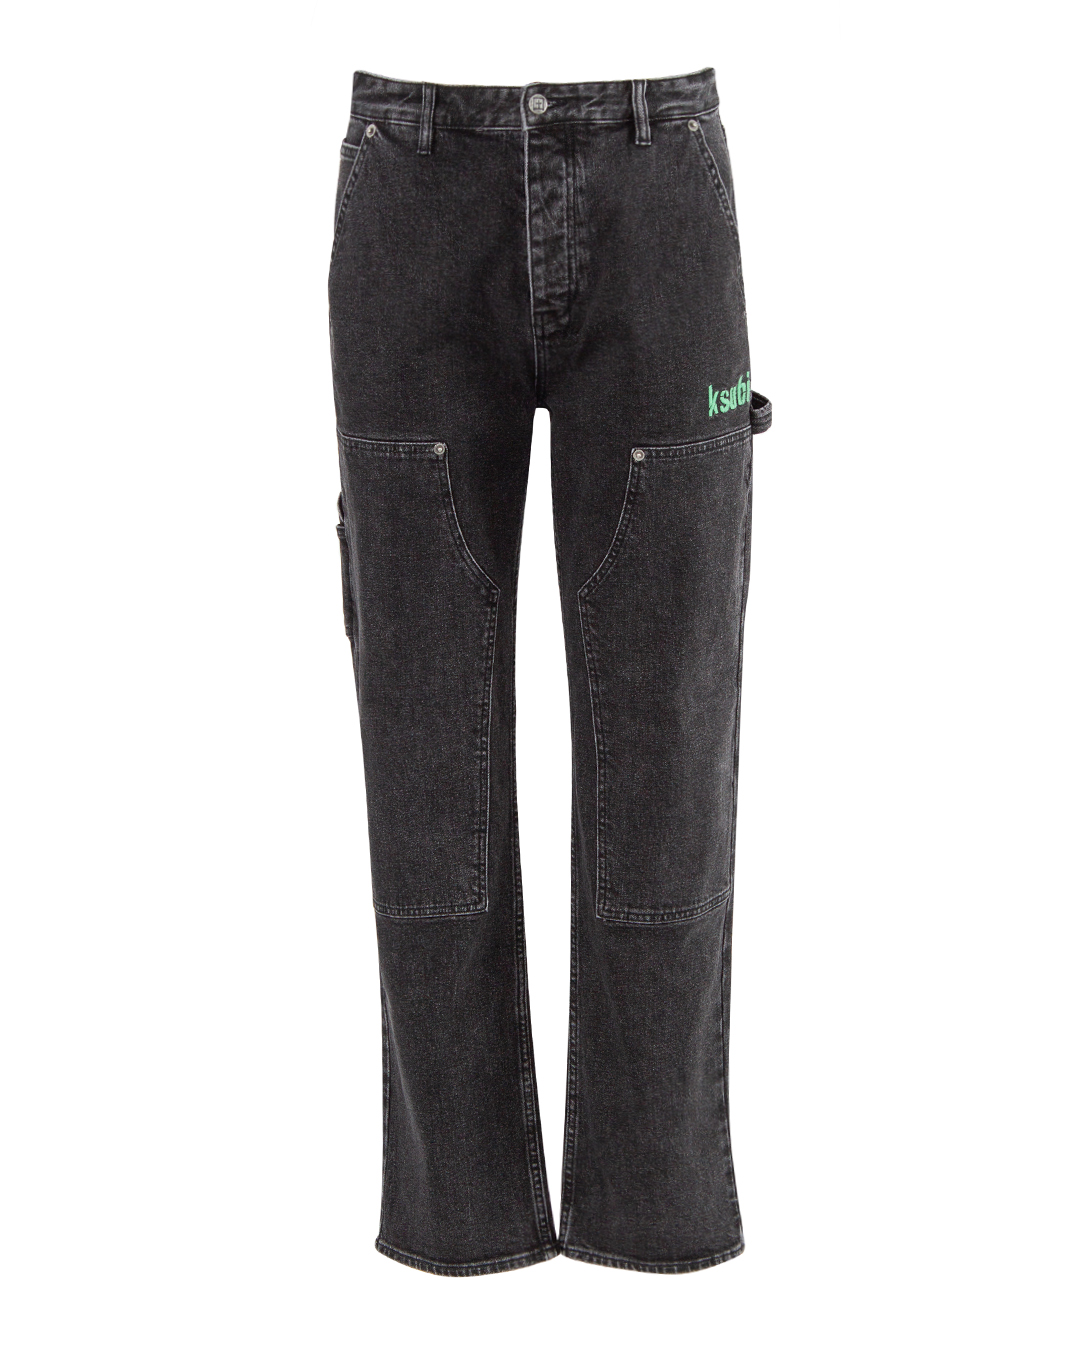 джинсы KSUBI 2 MFA23PA007 черный 30, размер 30